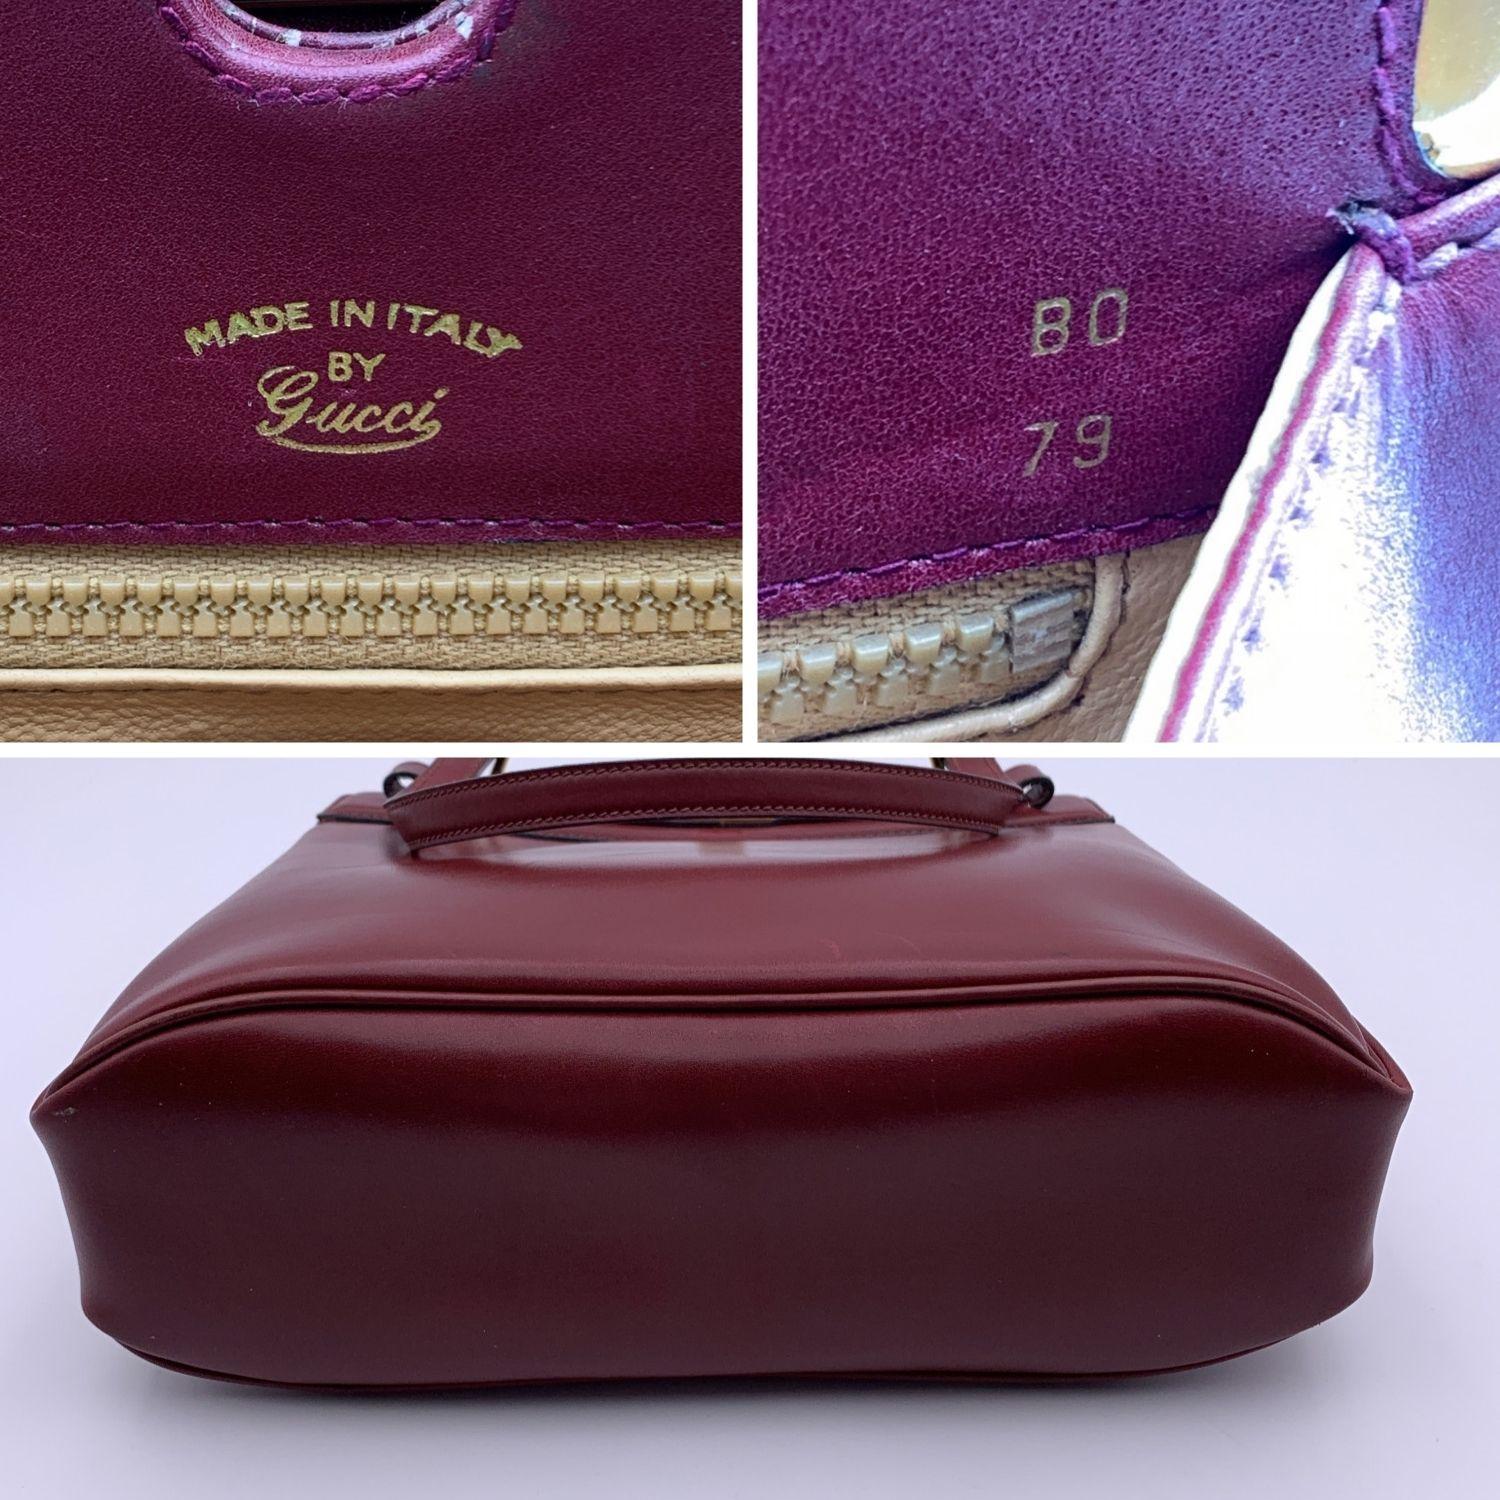 Gucci Vintage Burgundy Leather Handbag Satchel Top Handles Bag 2